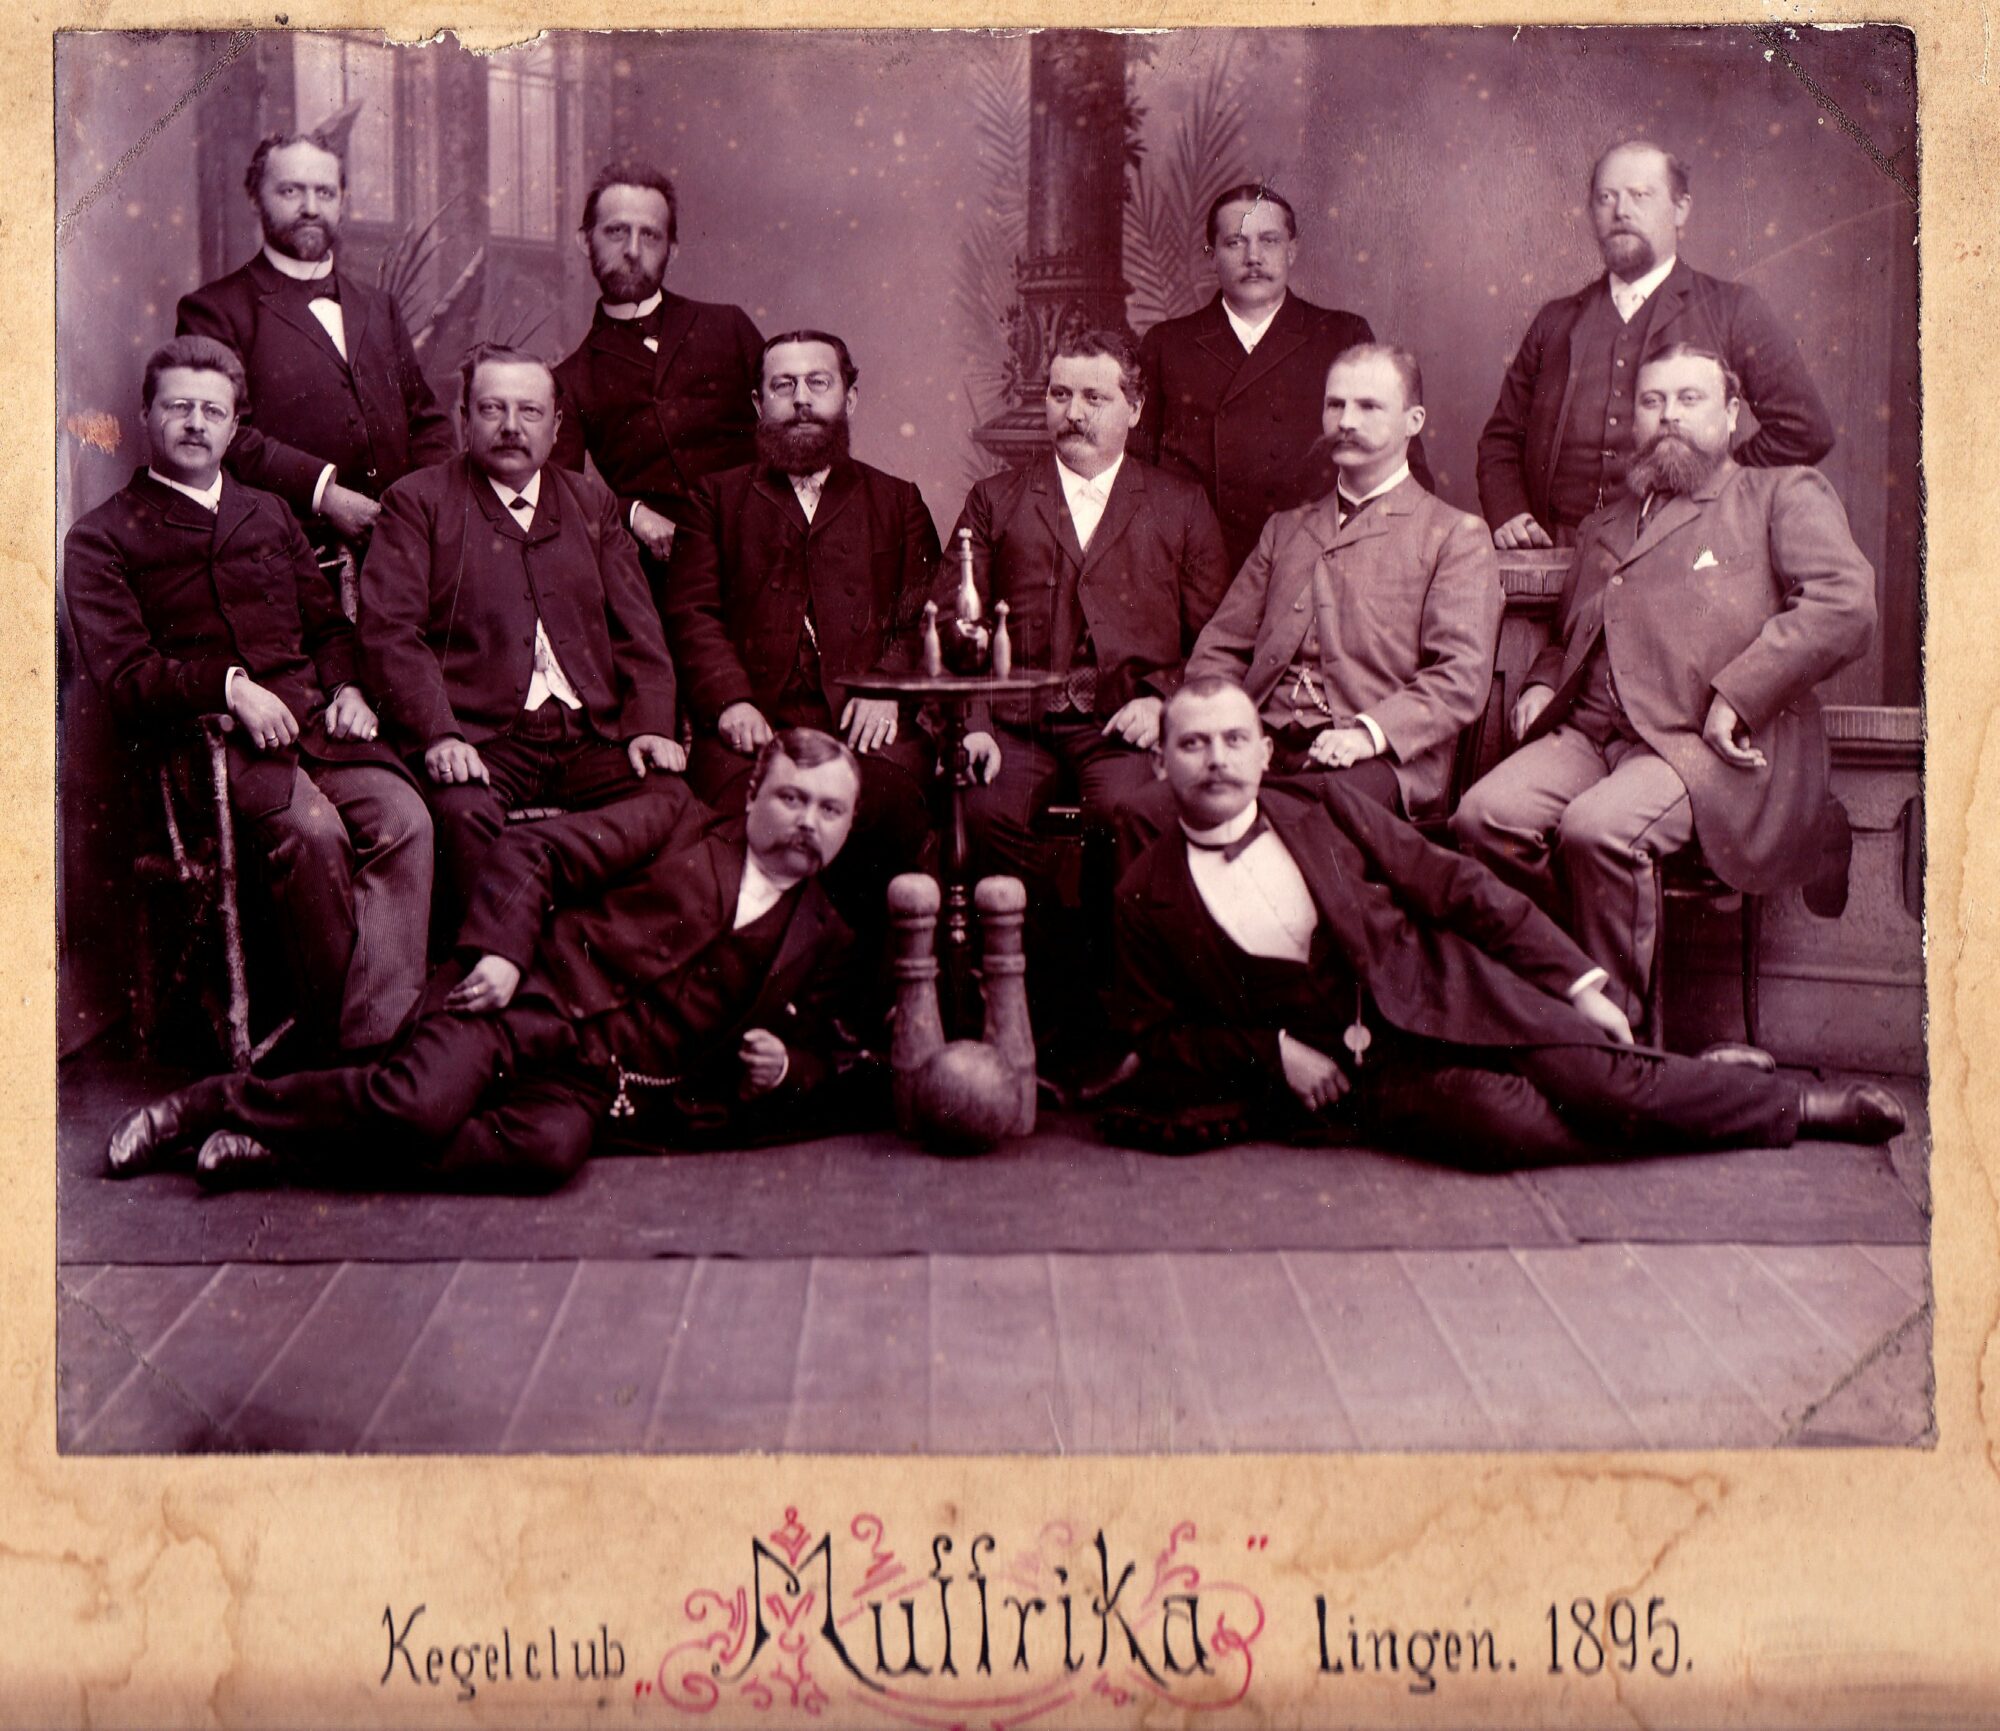 Abb. 1: Der Lingener Kegelclub „Muffrika“ von 1895.